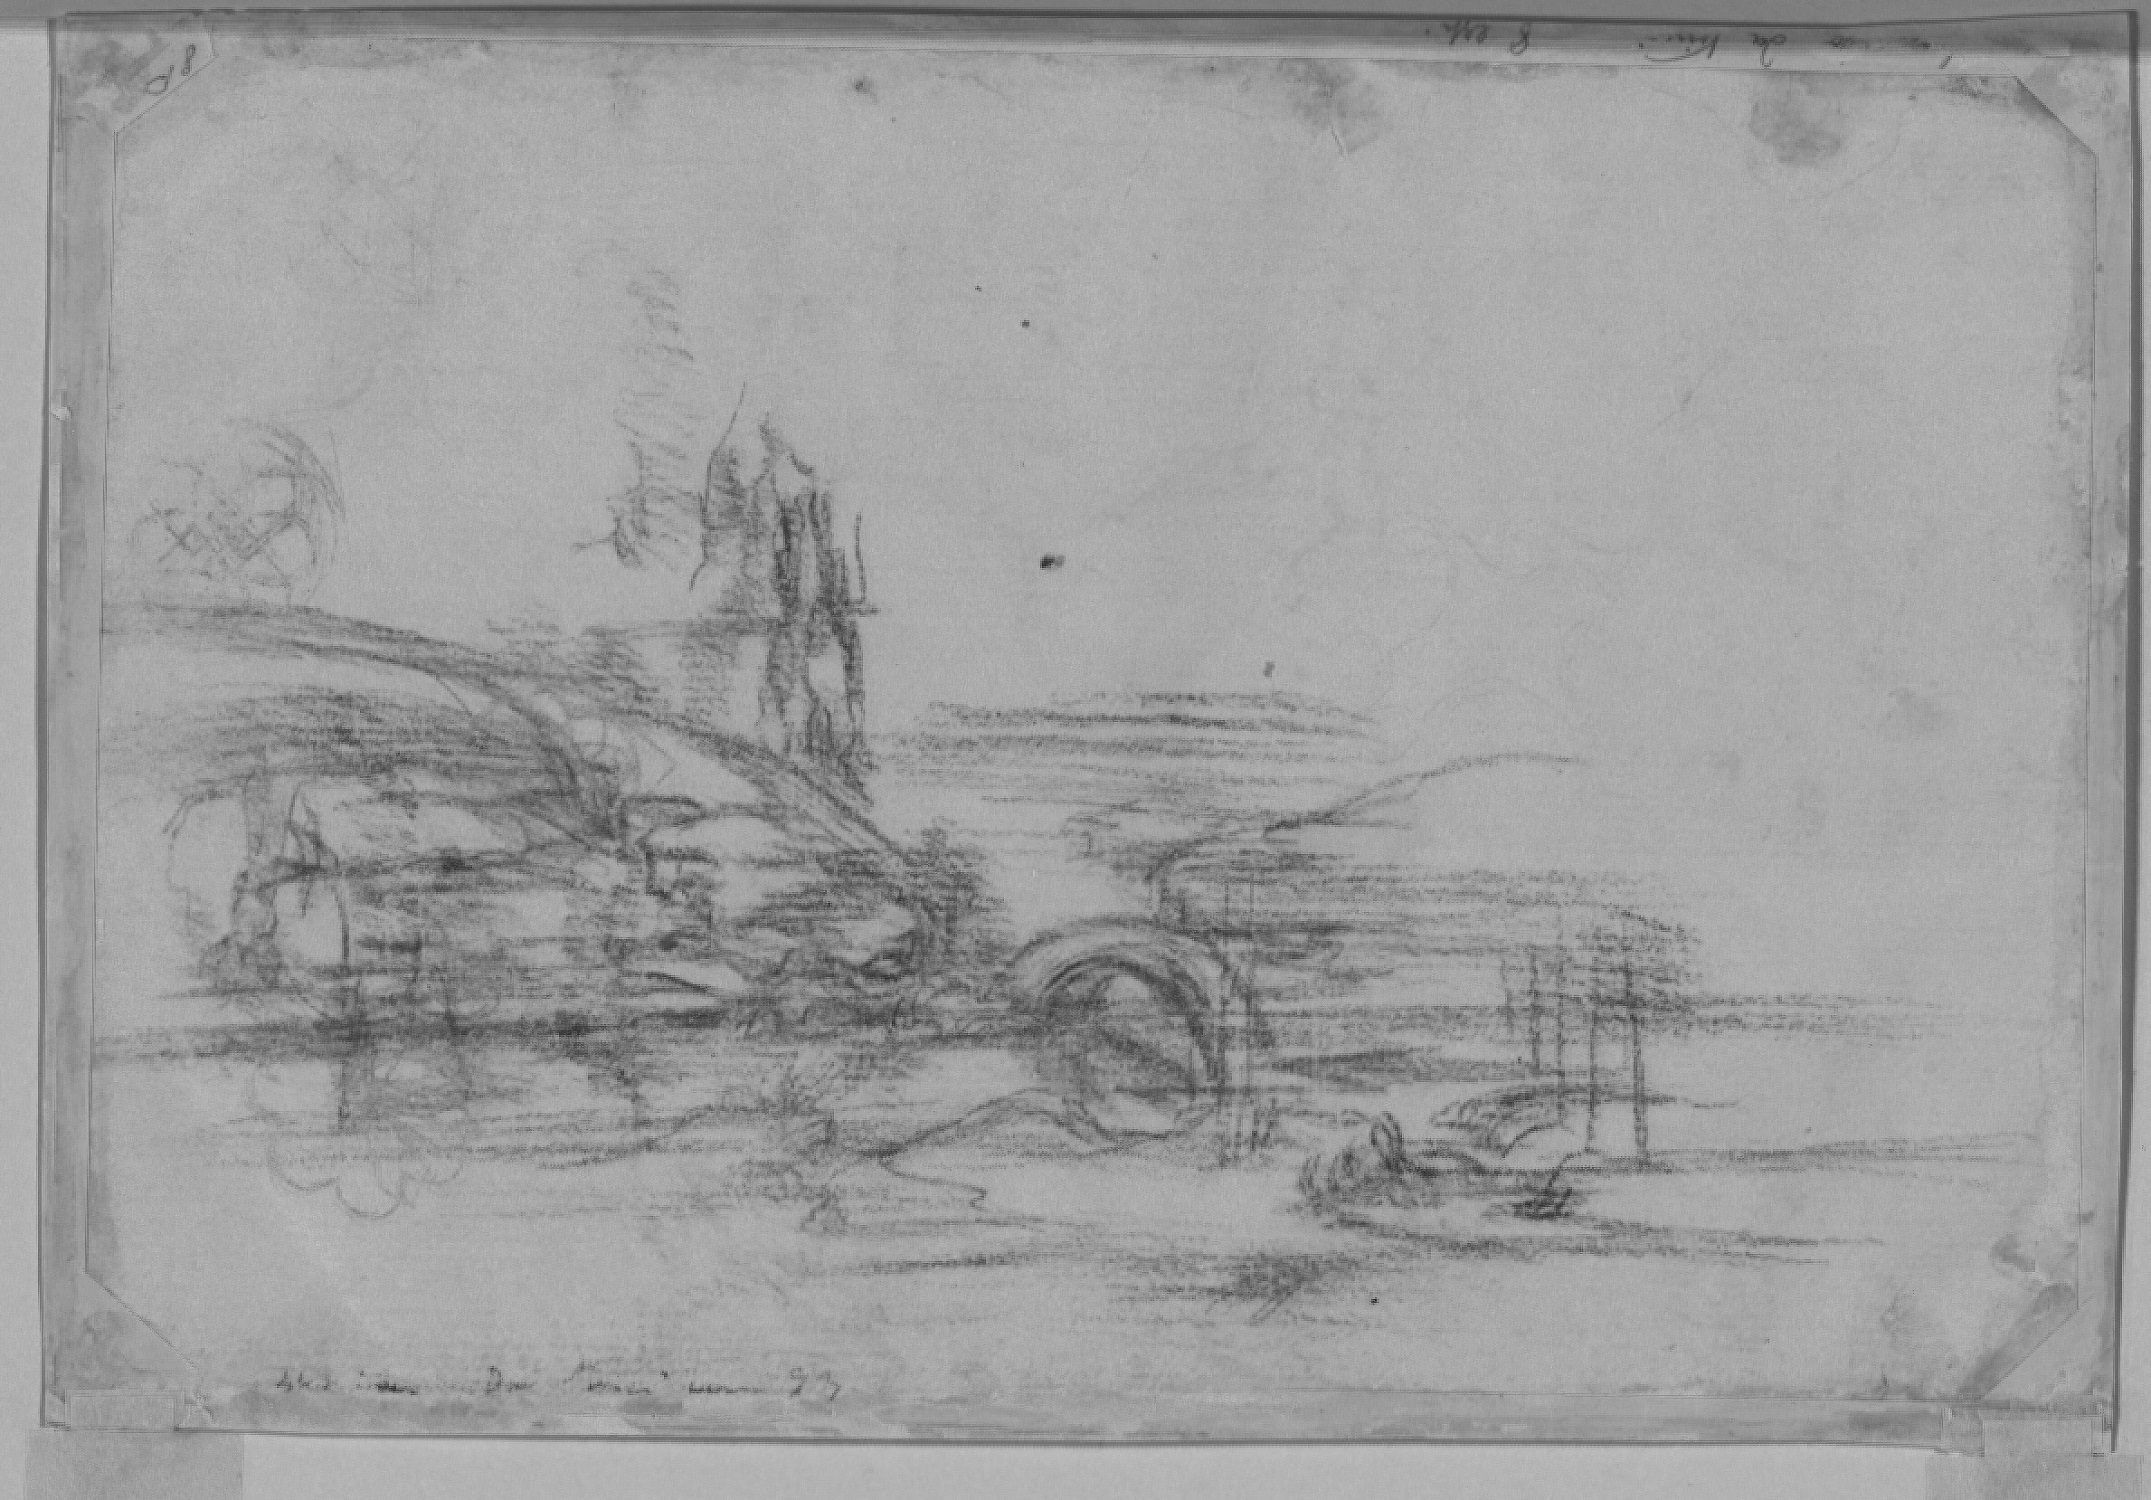 The diagnostic campaign of the Opificio delle Pietre Dure on the first landscape by Leonardo